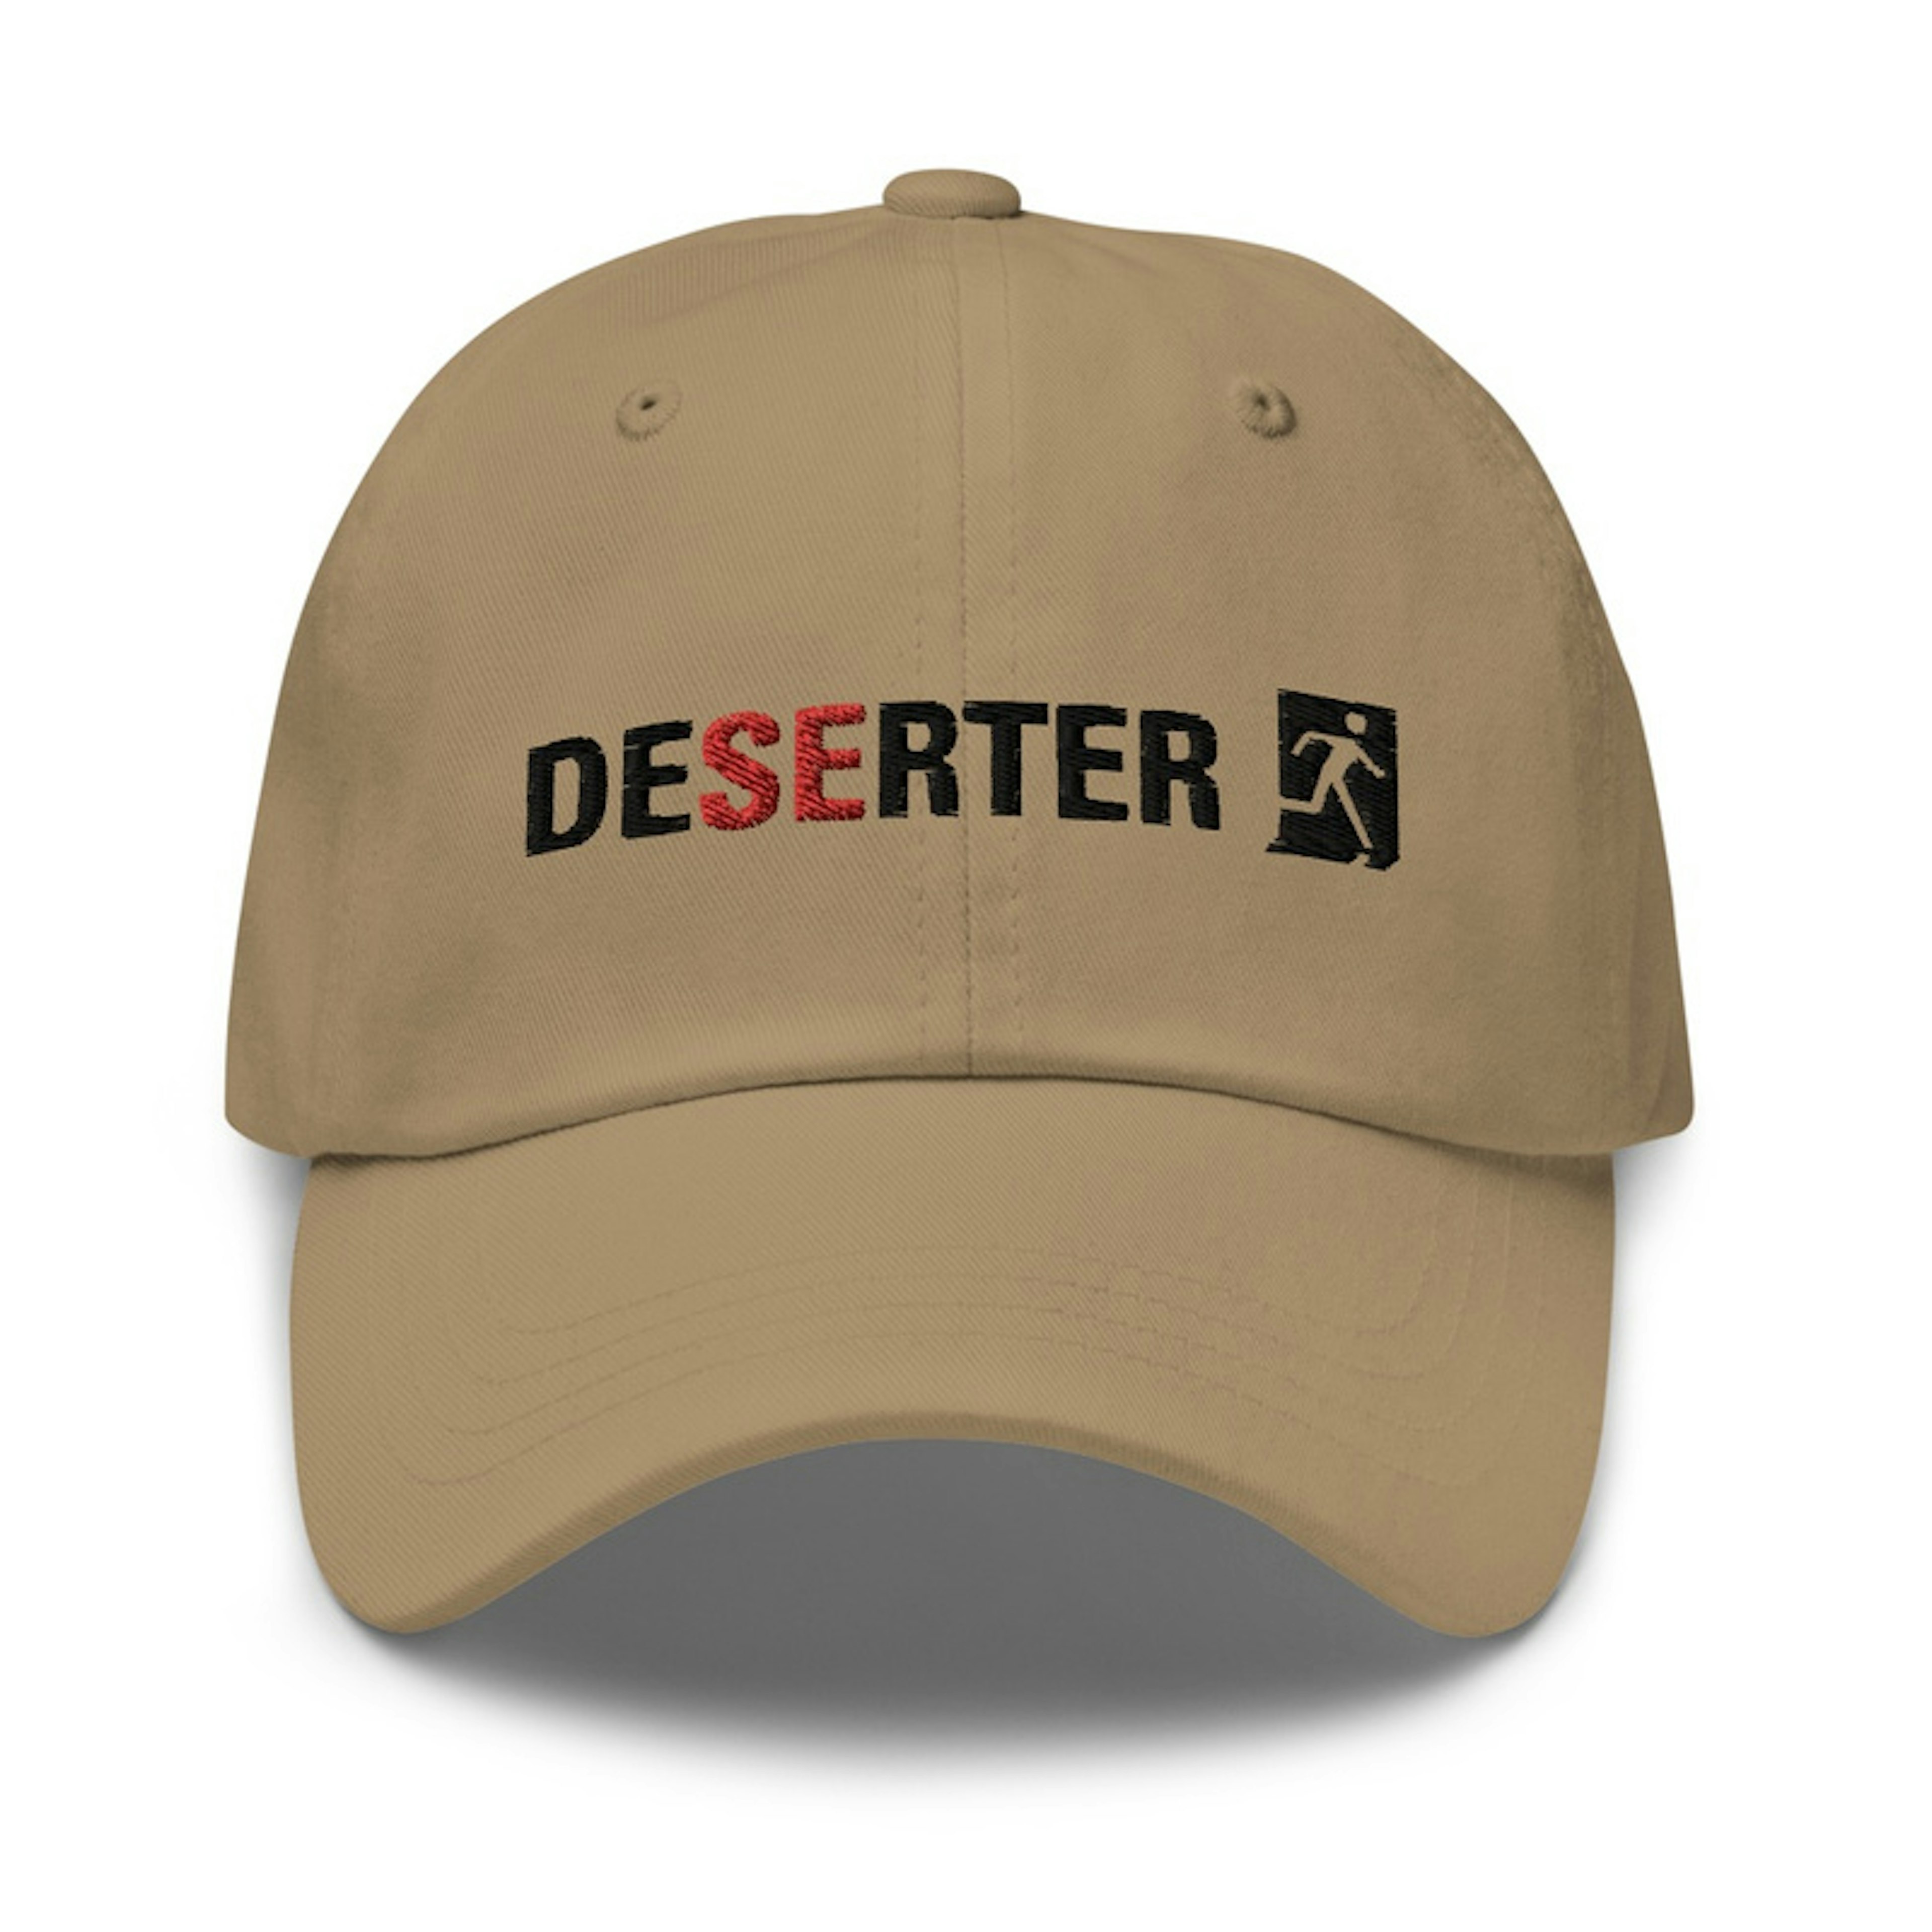 Classic Deserter baseball cap